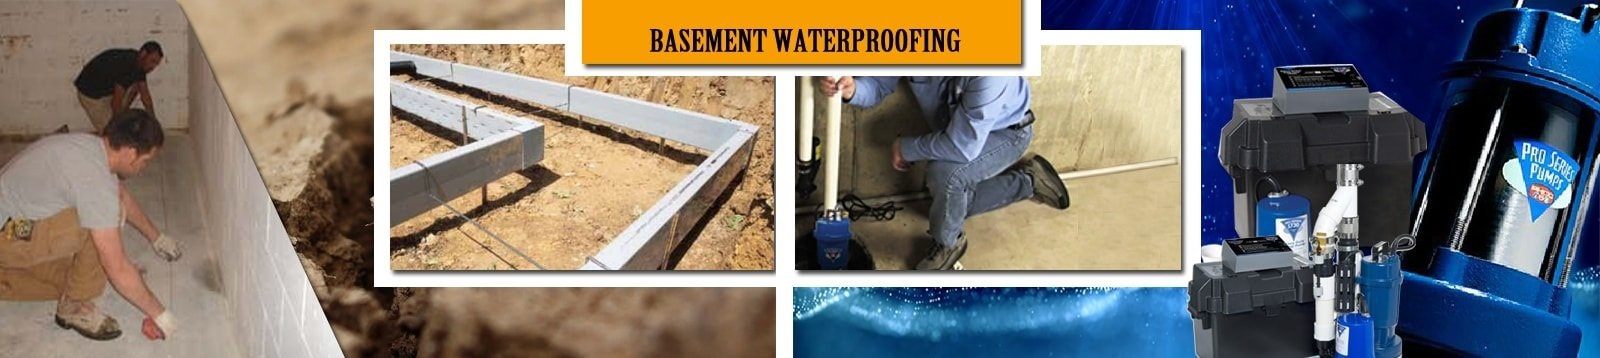 basement waterproofing services in Eastern Nebraska and Western Iowa